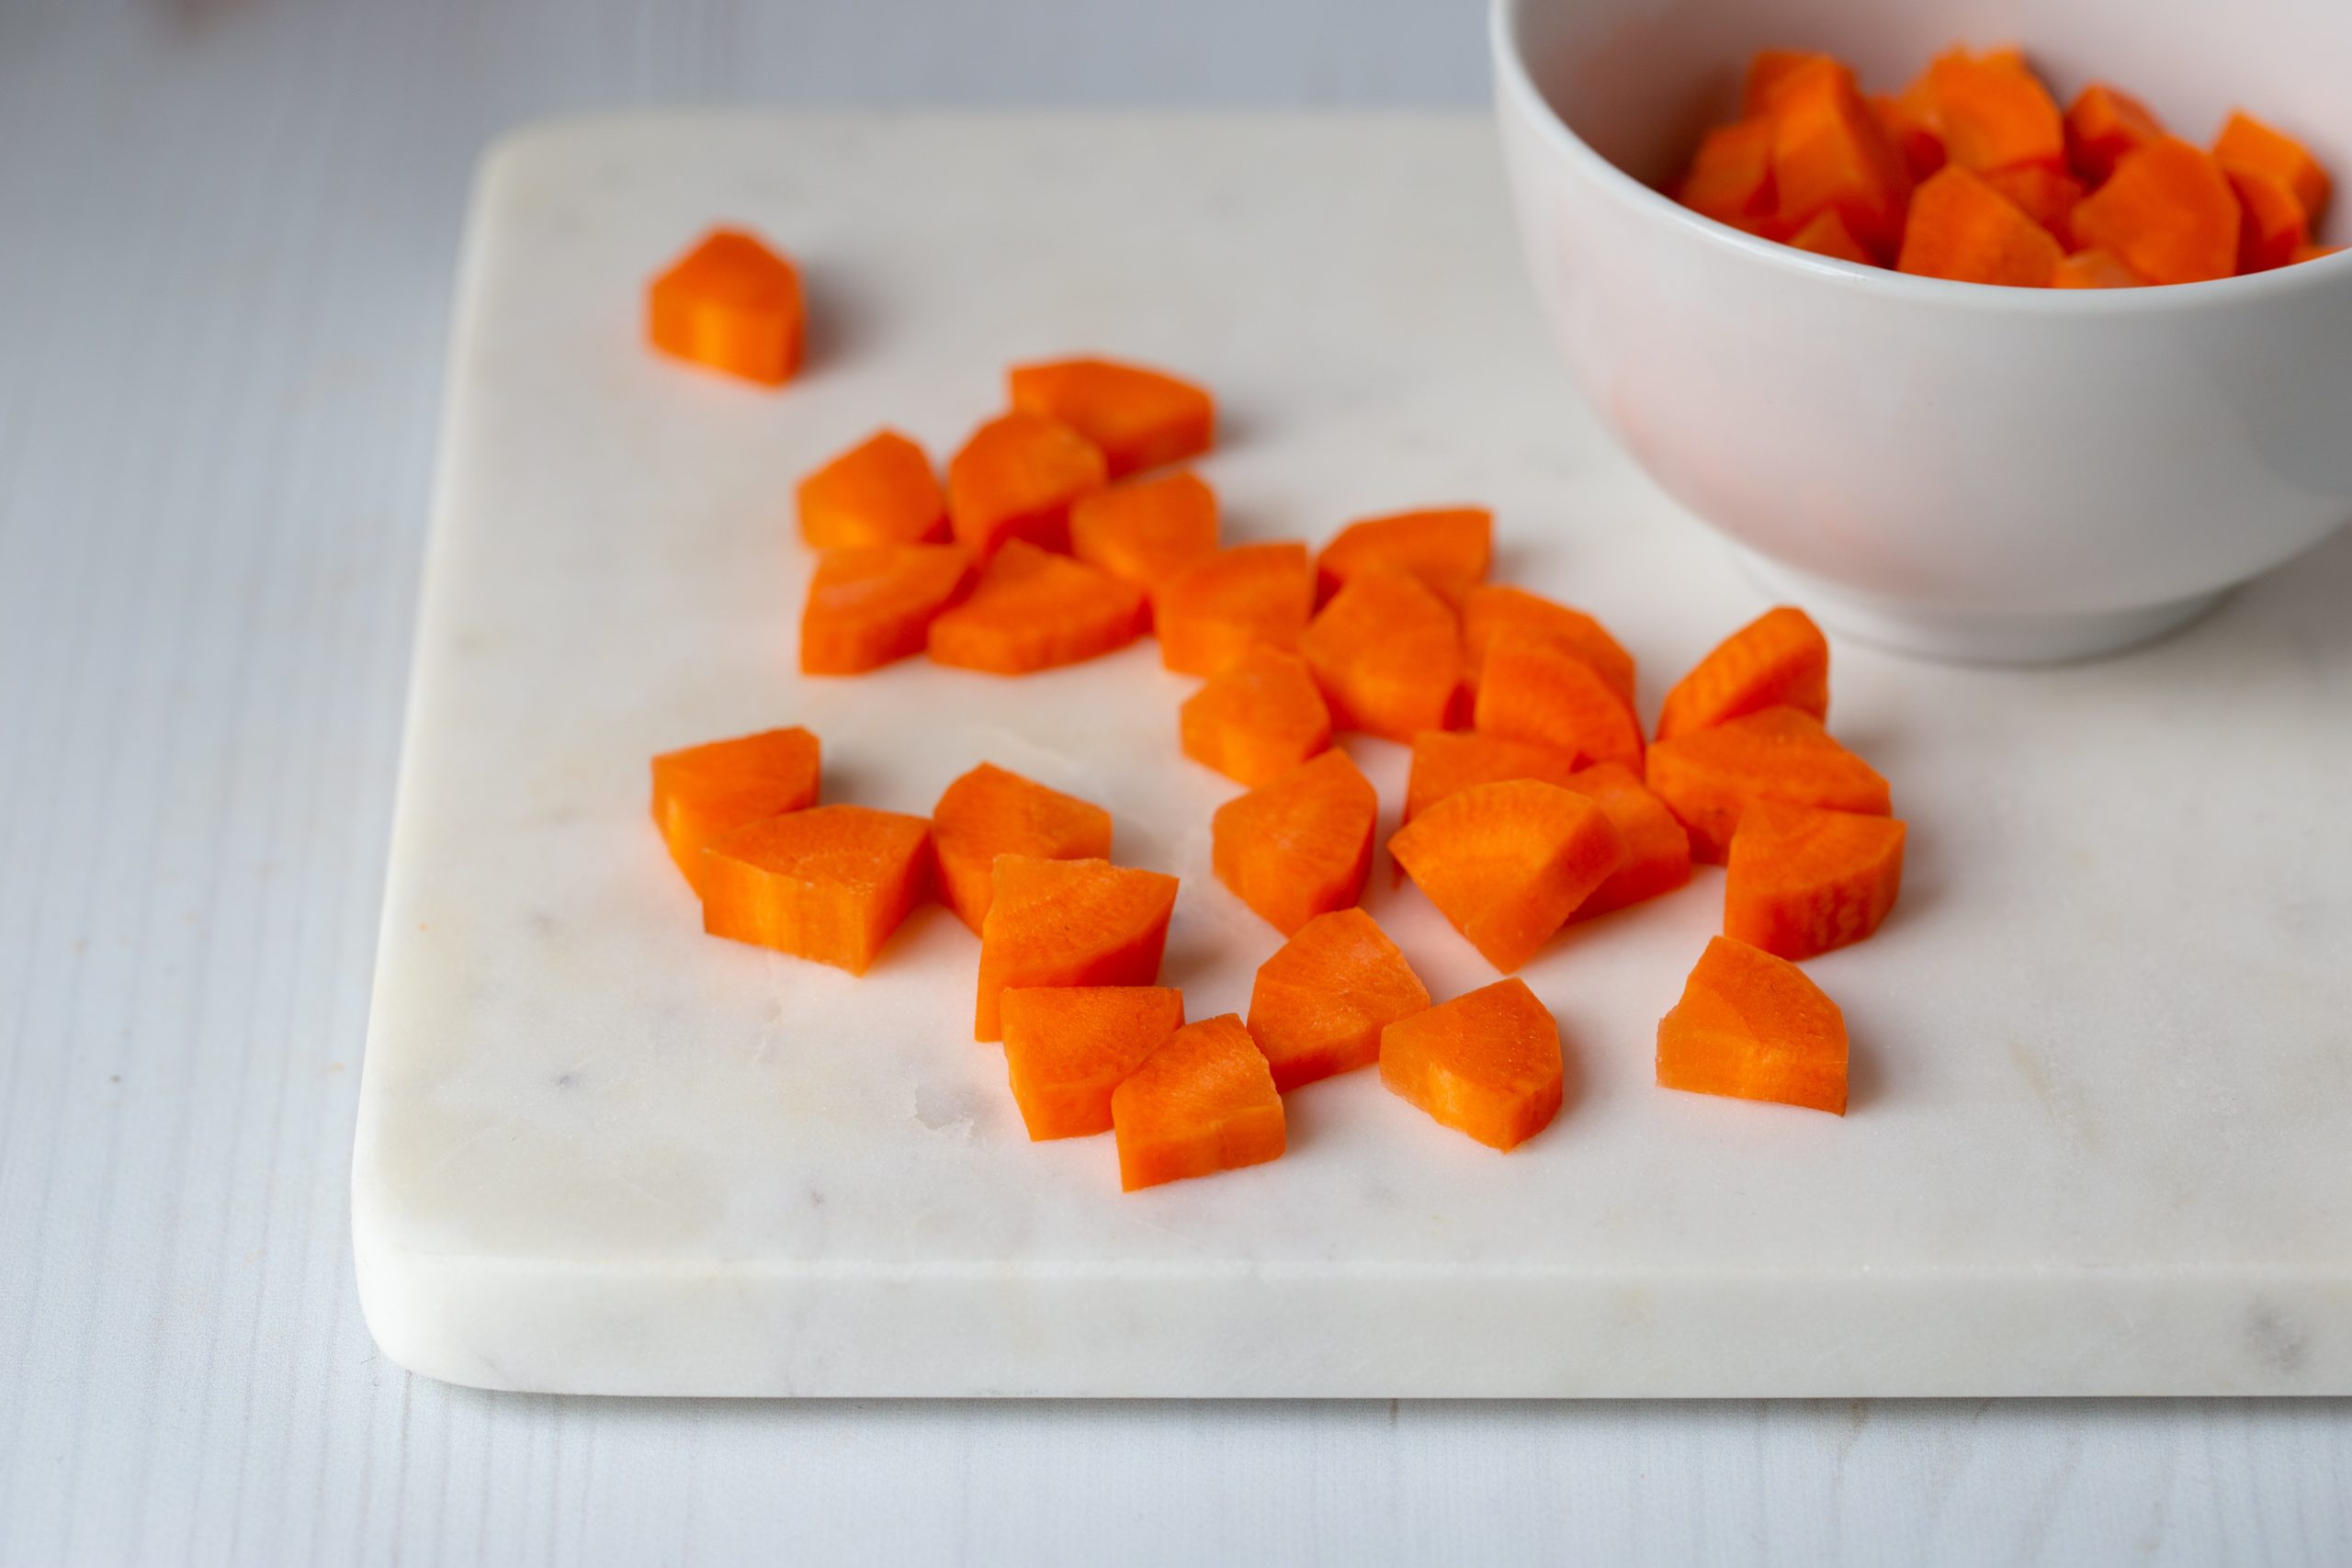 chopped carrots | knife cuts